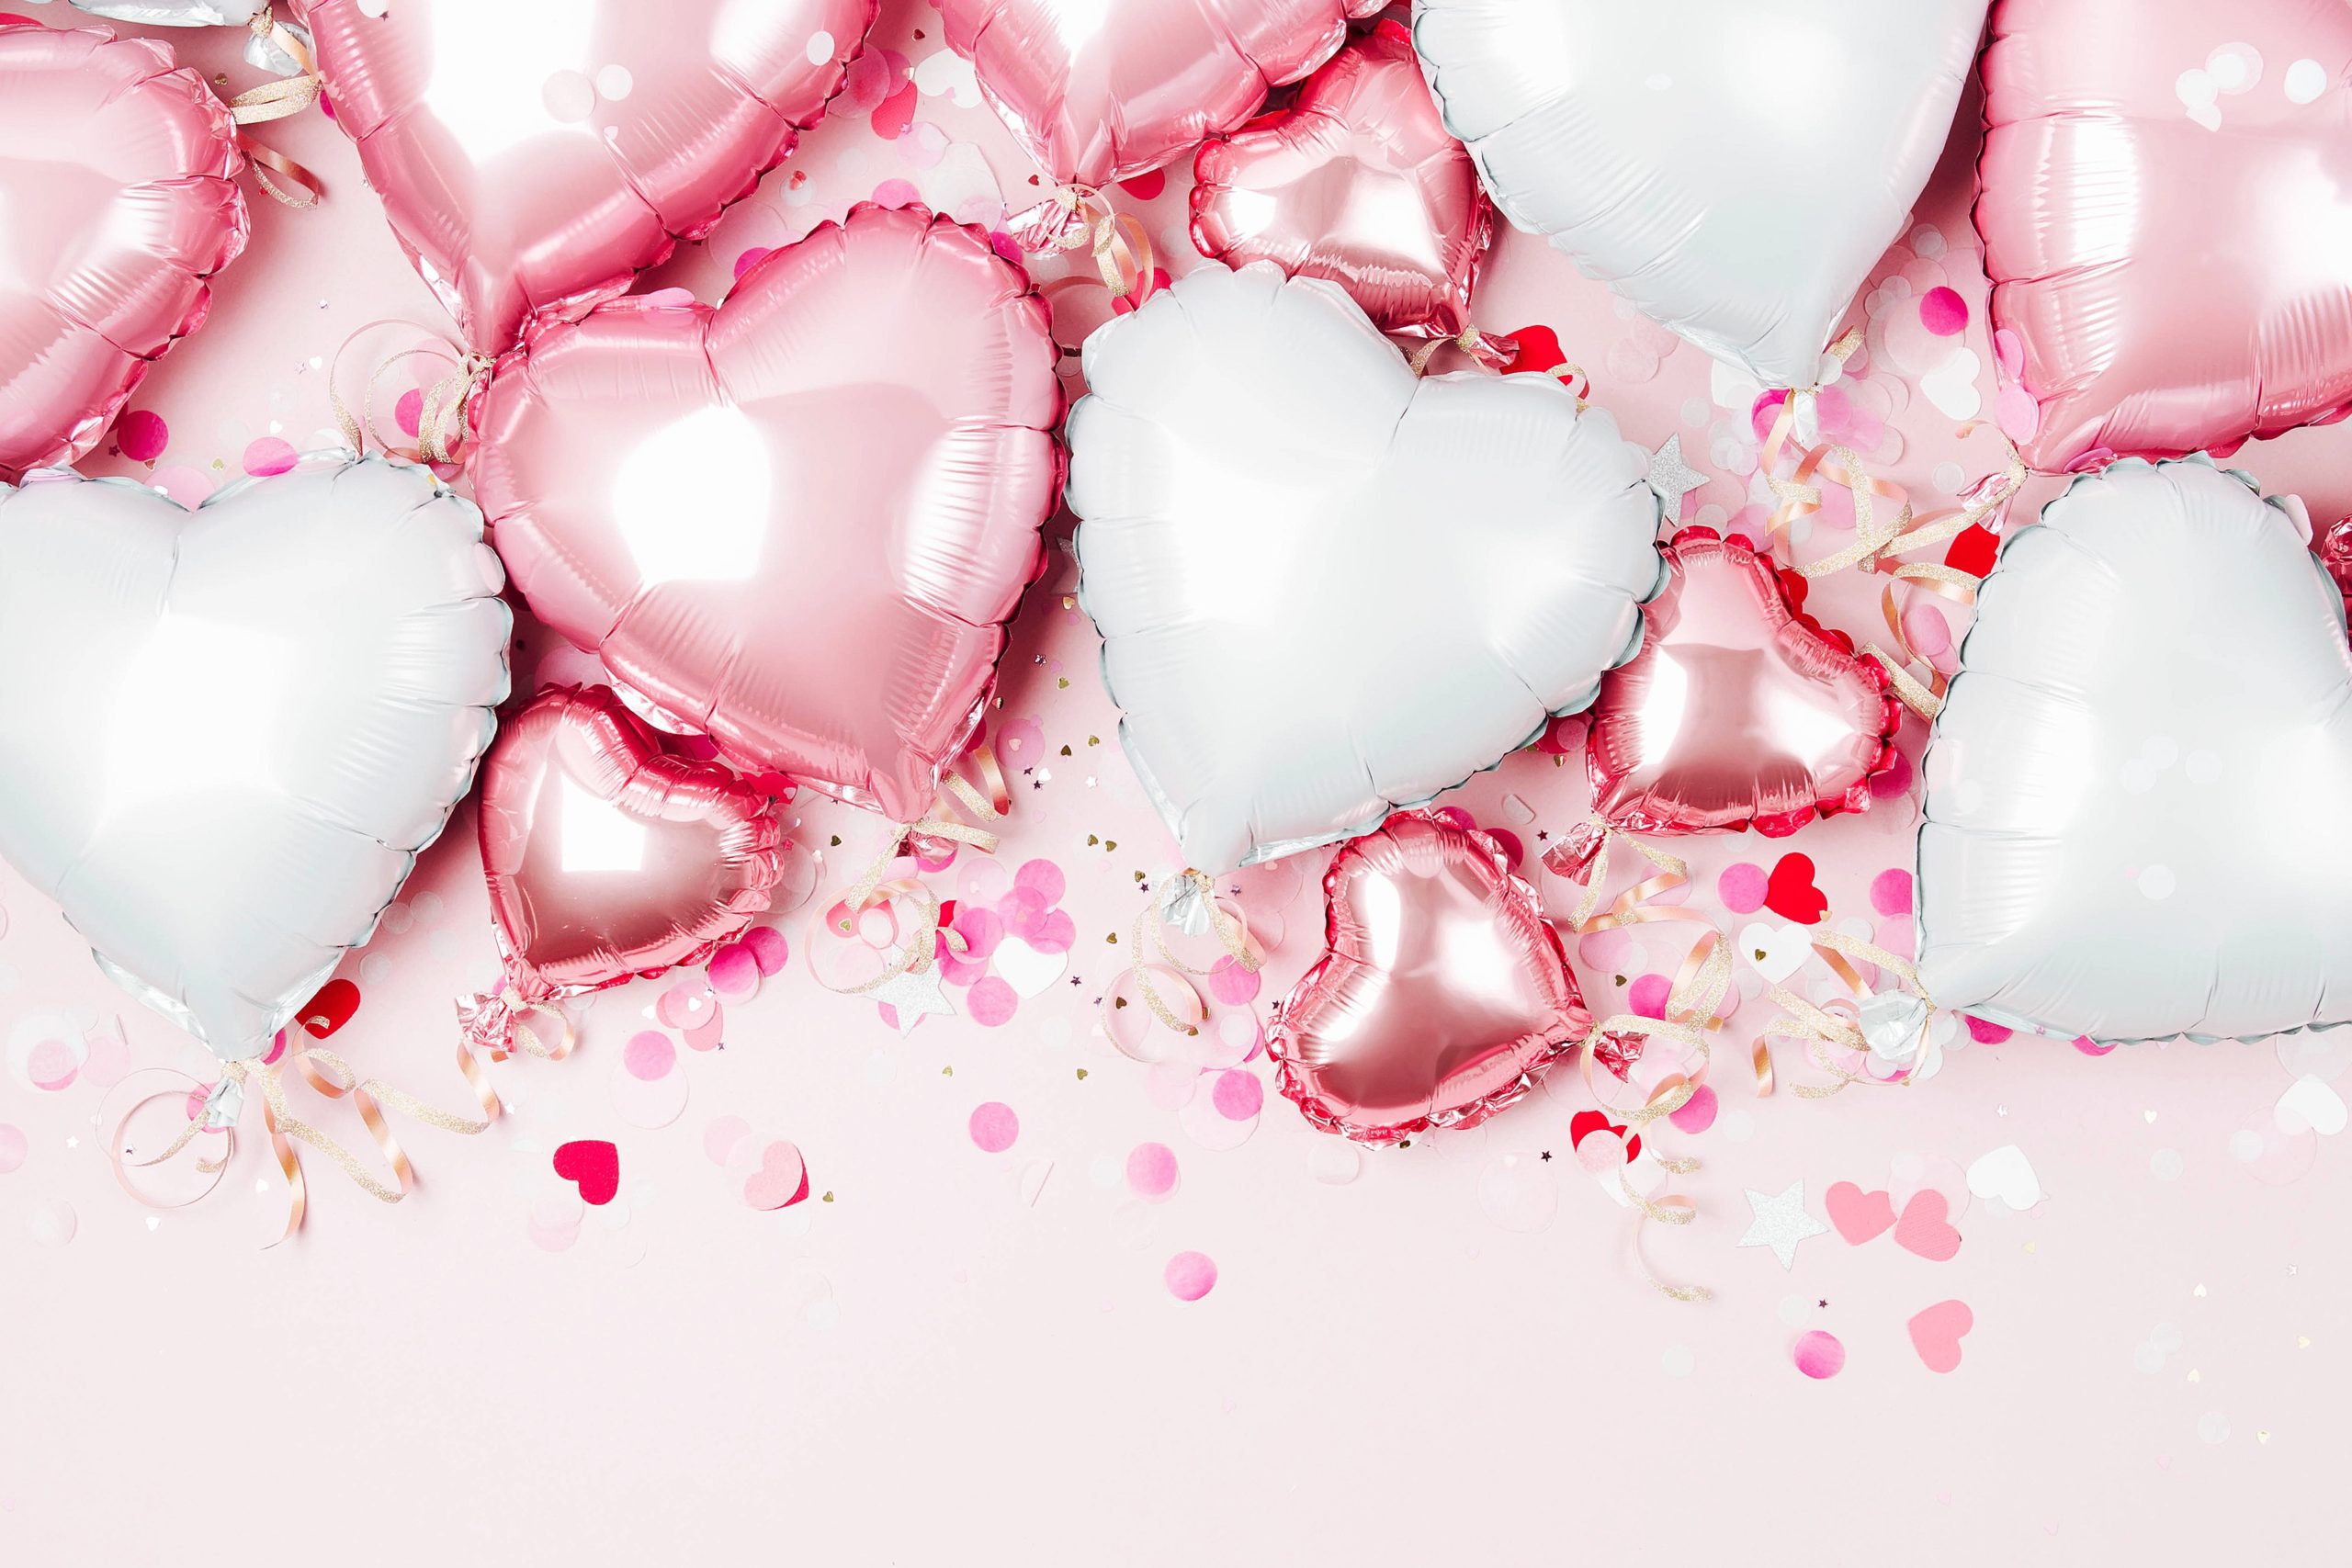 <img src="pink.jpg" alt="pink heart shaped balloons"/> 